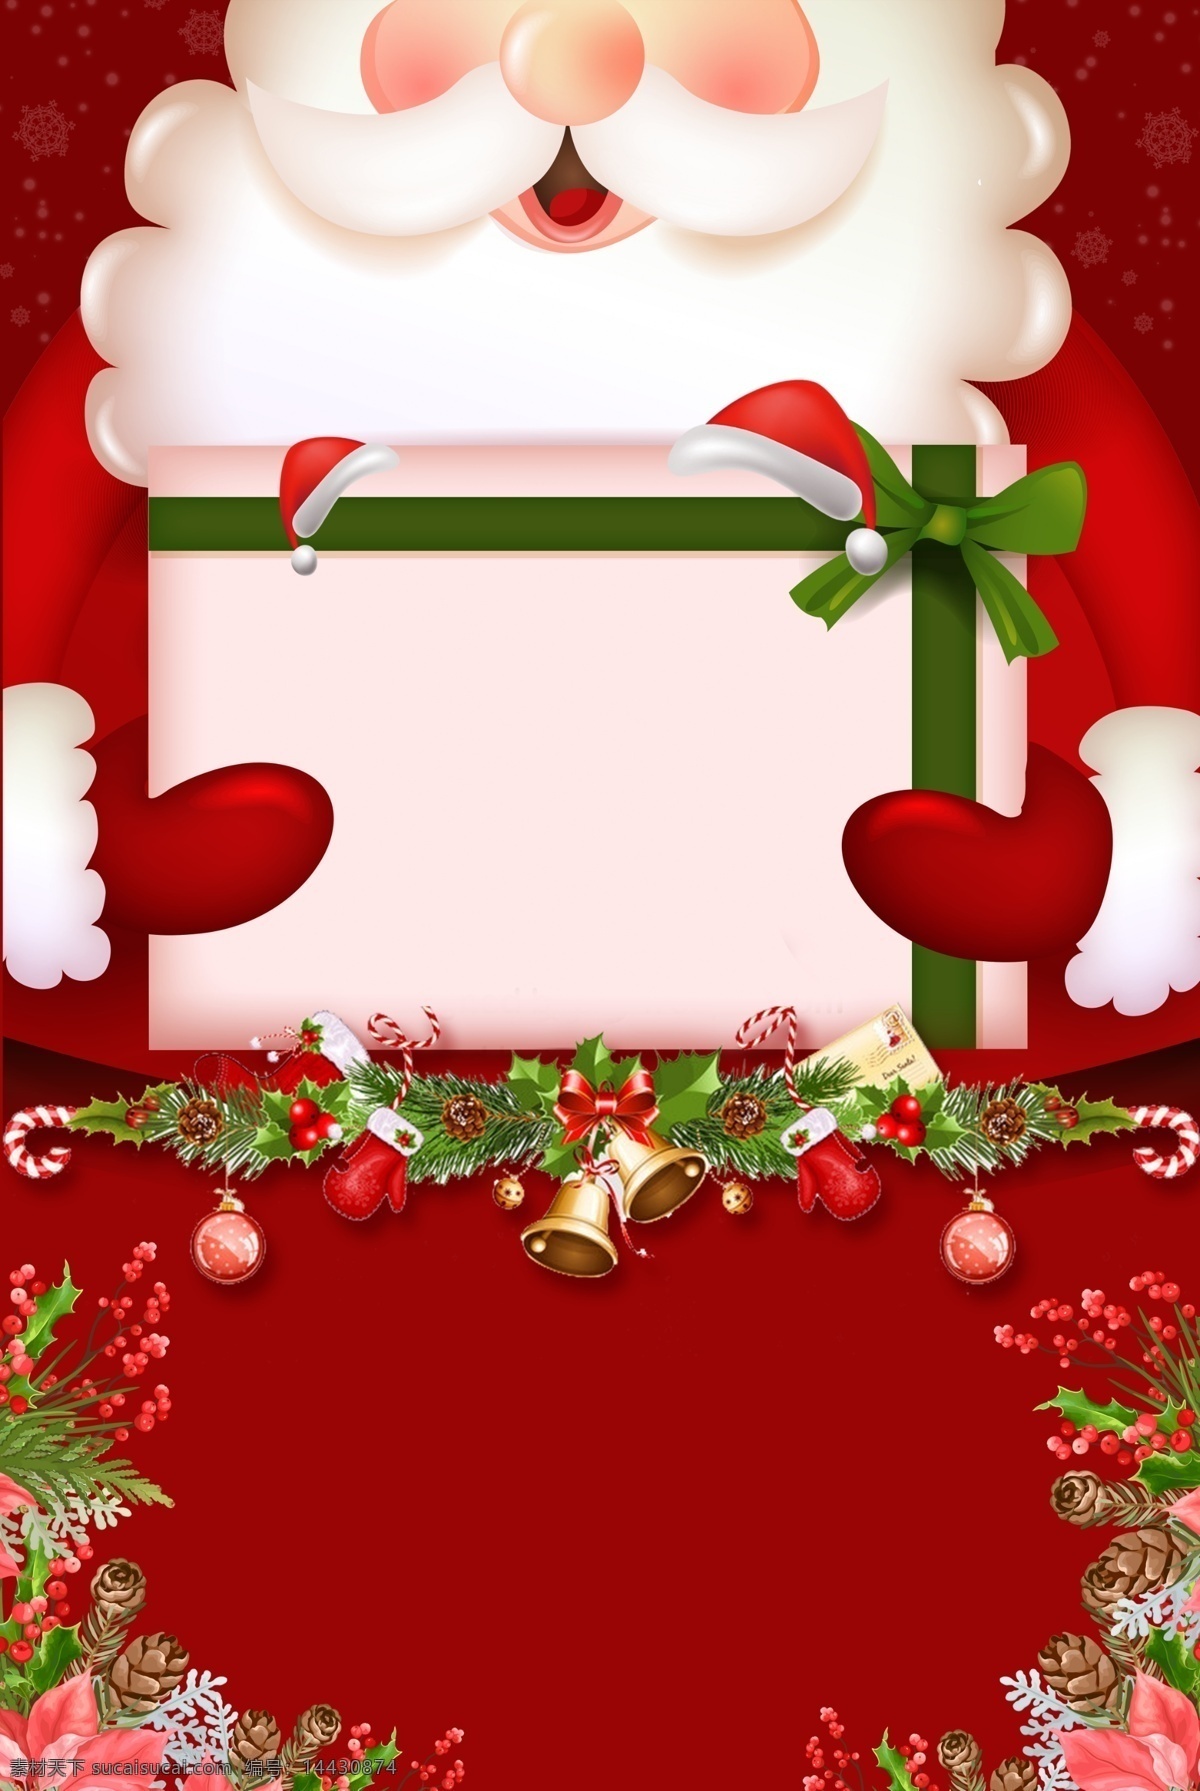 元旦 圣诞节 新年 广告 背景 图 卡通 圣诞树 圣诞老人 红色 麋鹿 双旦优惠 圣诞活动 雪地 广告背景